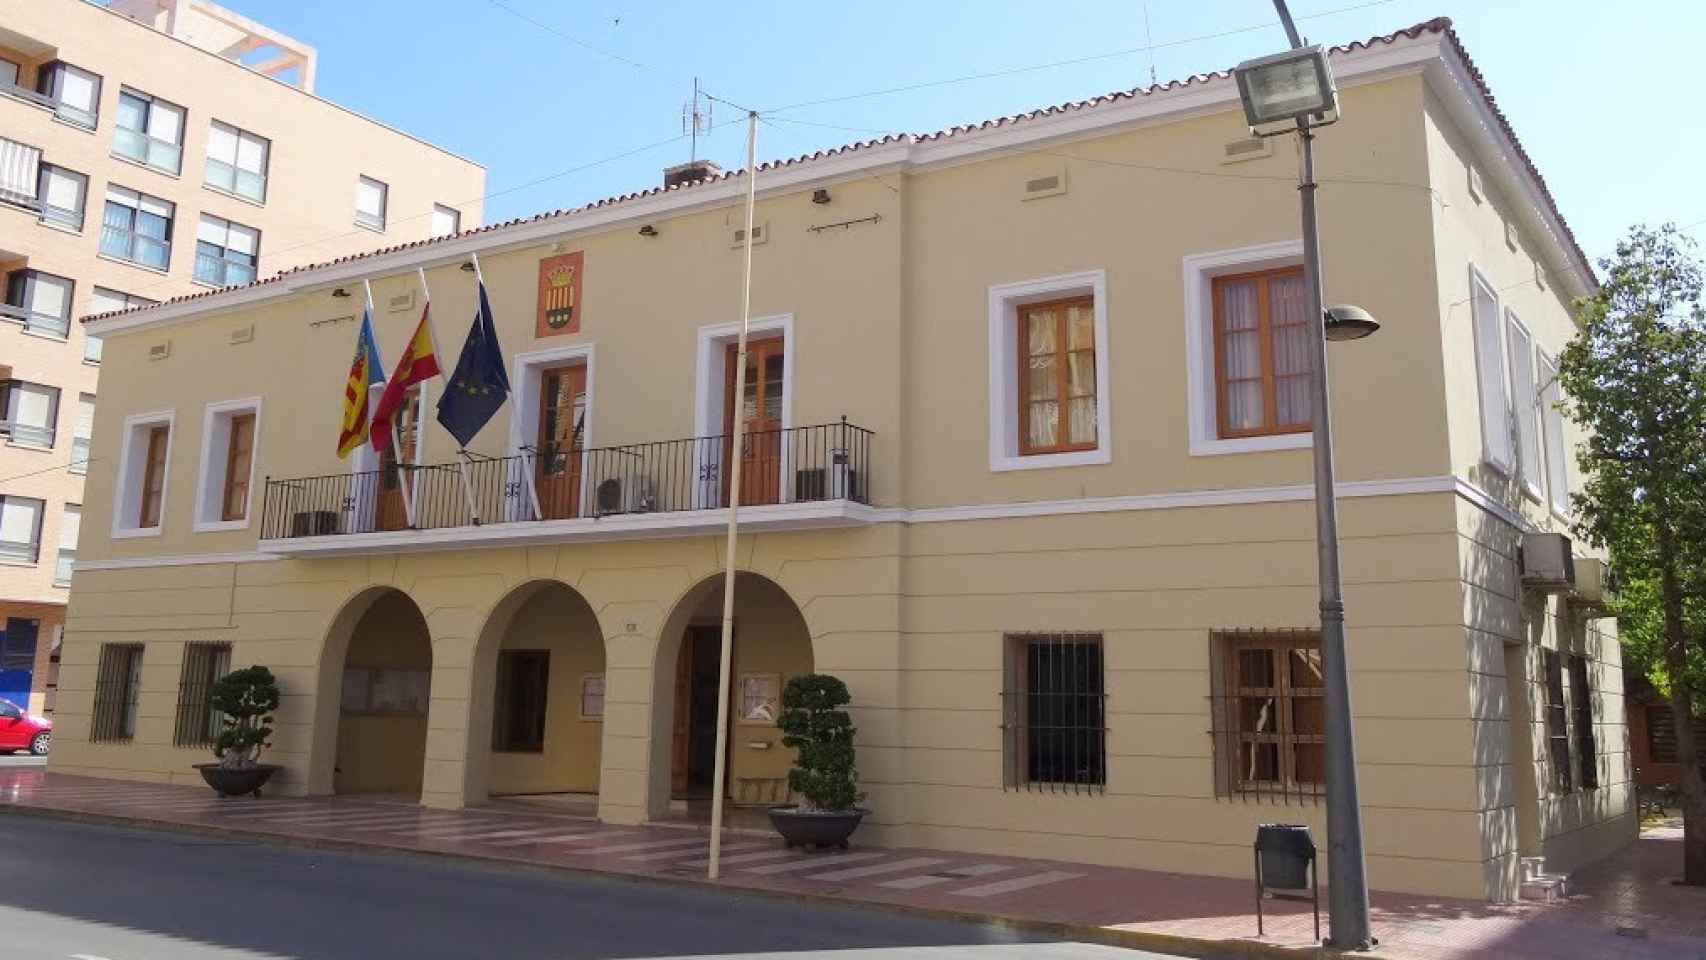 El supuesto caso de bullying ha generado preocupación en el Ayuntamiento de Mutxamel donde PSOE y Podemos han pedido información a la Concejalía de Educación.